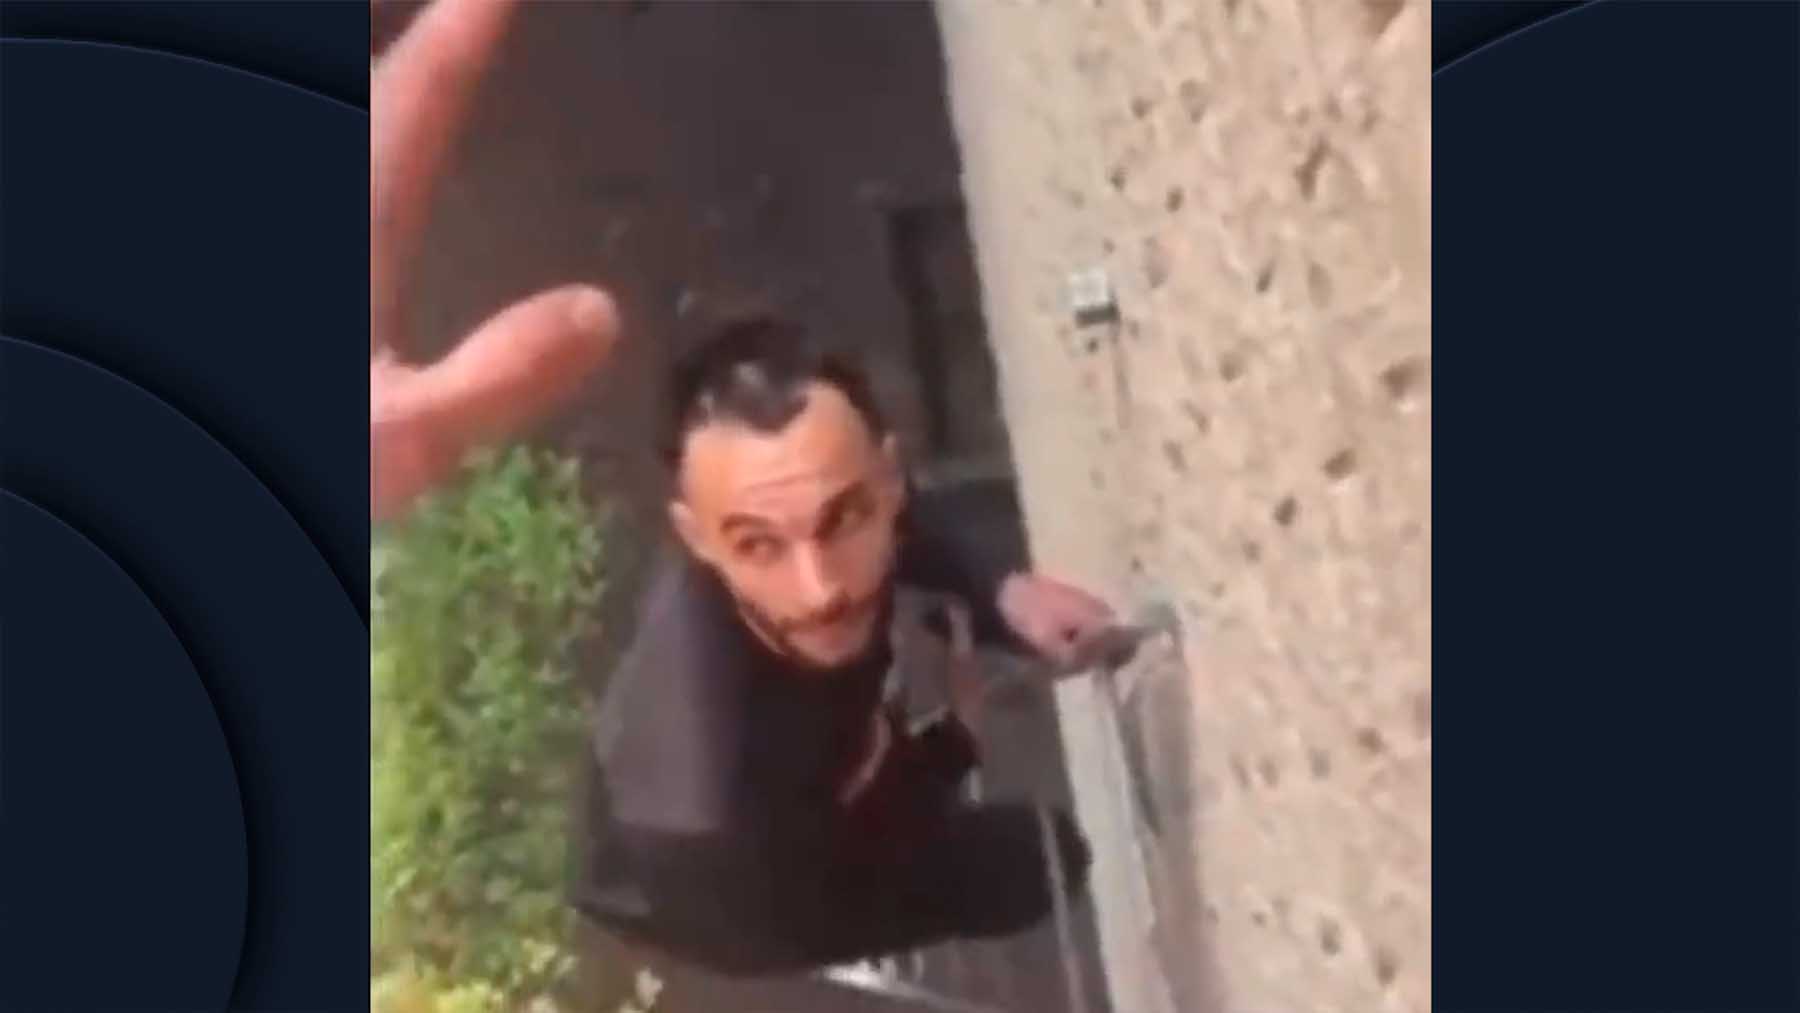 El agresor subió a la vivienda con una escalera portátil